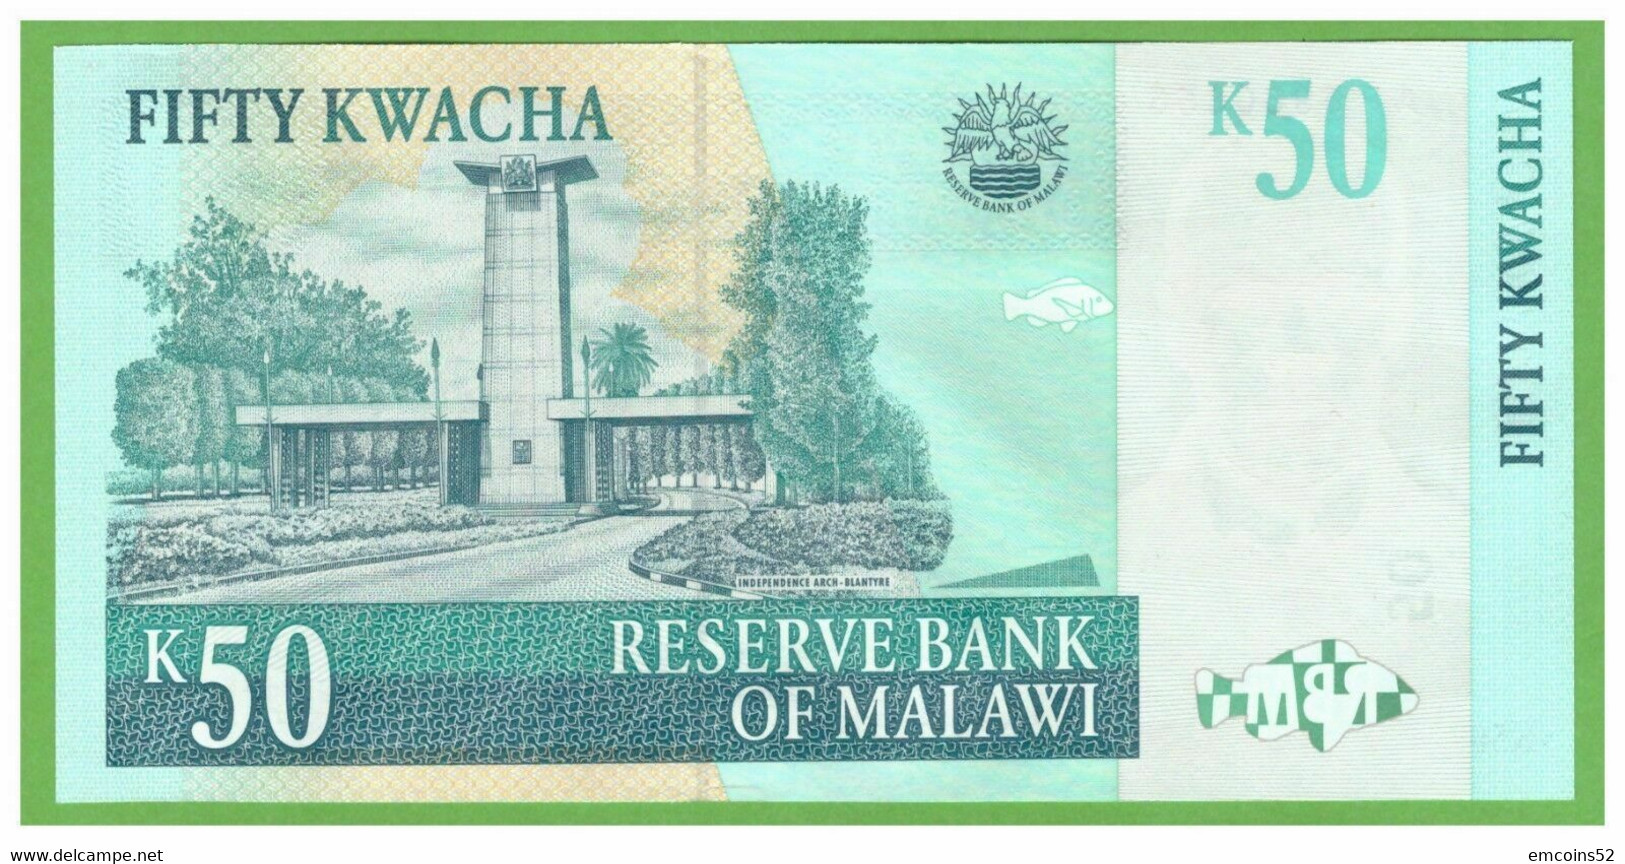 MALAWI 50 KWACHA 2001  P-45a  UNC - Malawi